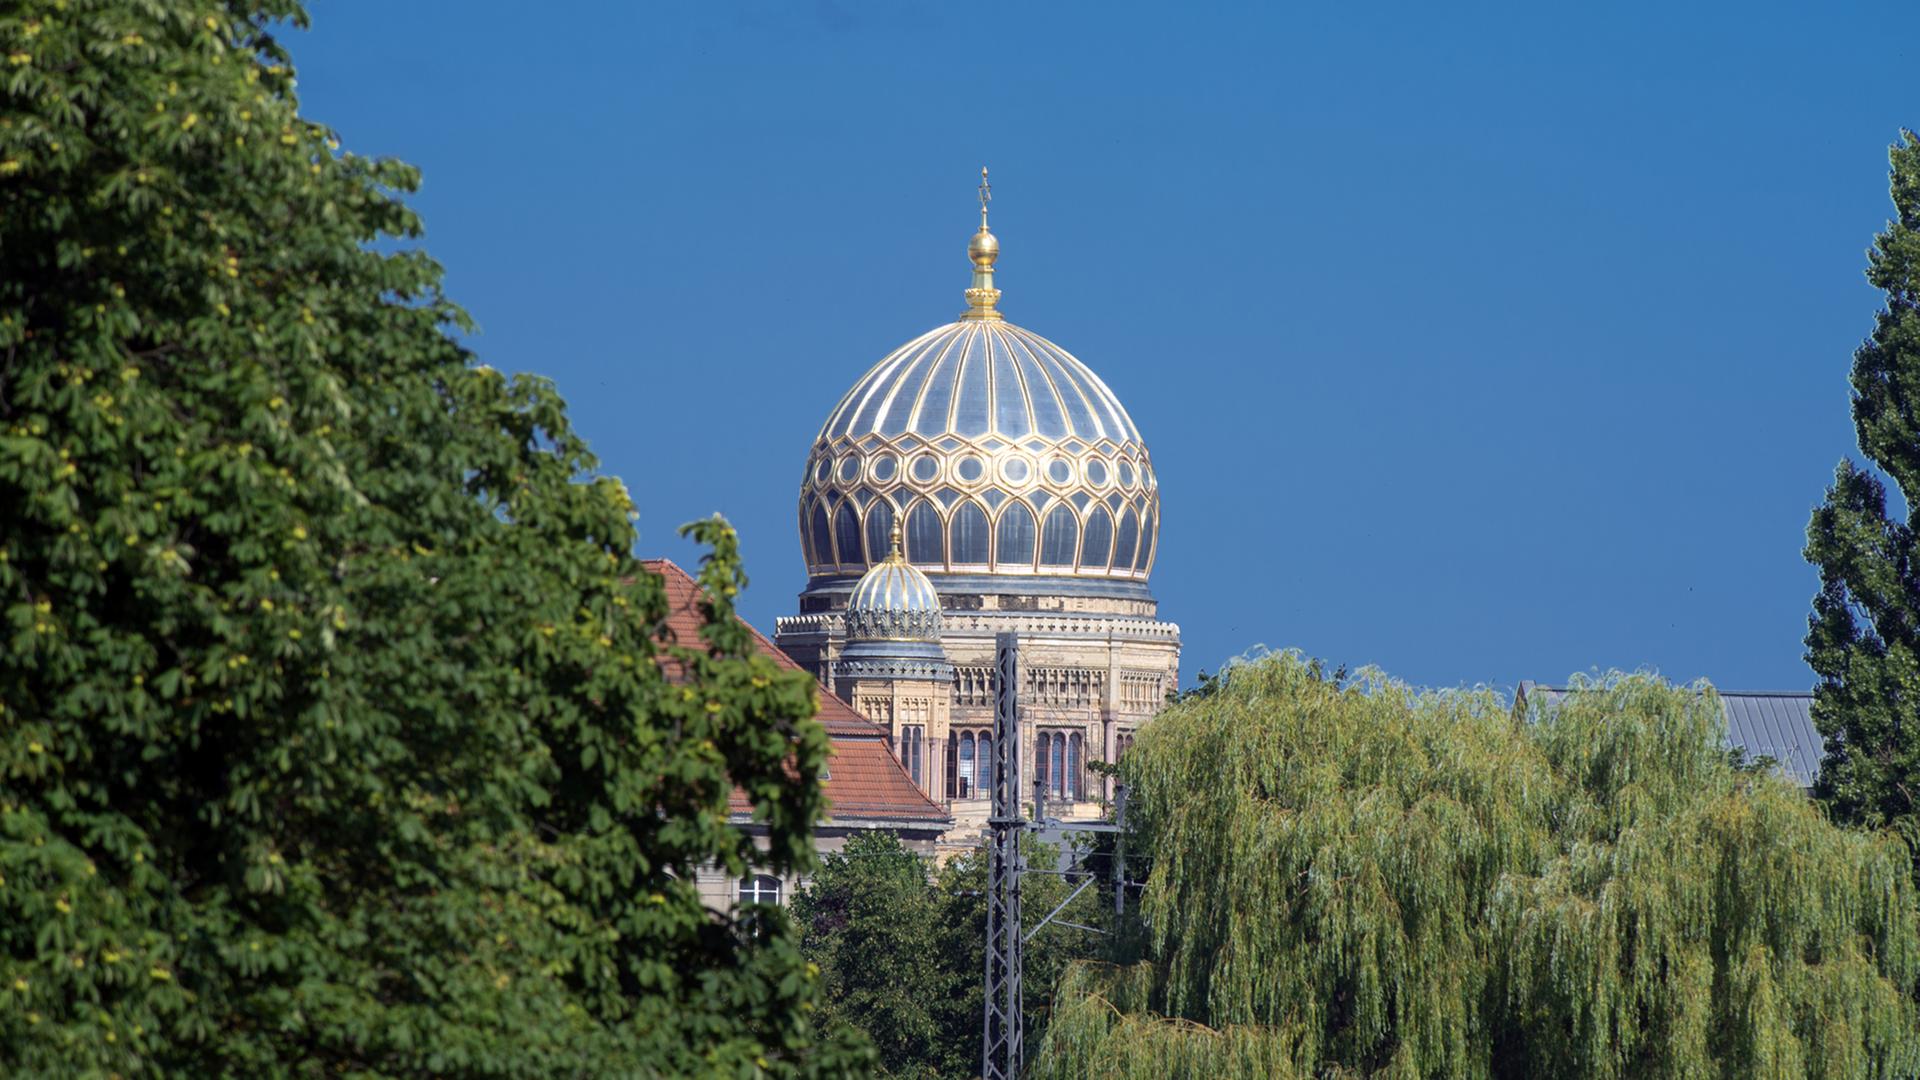 Die Kuppel der Jüdischen Synagoge in der Oranienburger Straße, aufgenommen am 23.07.2014 in Berlin.